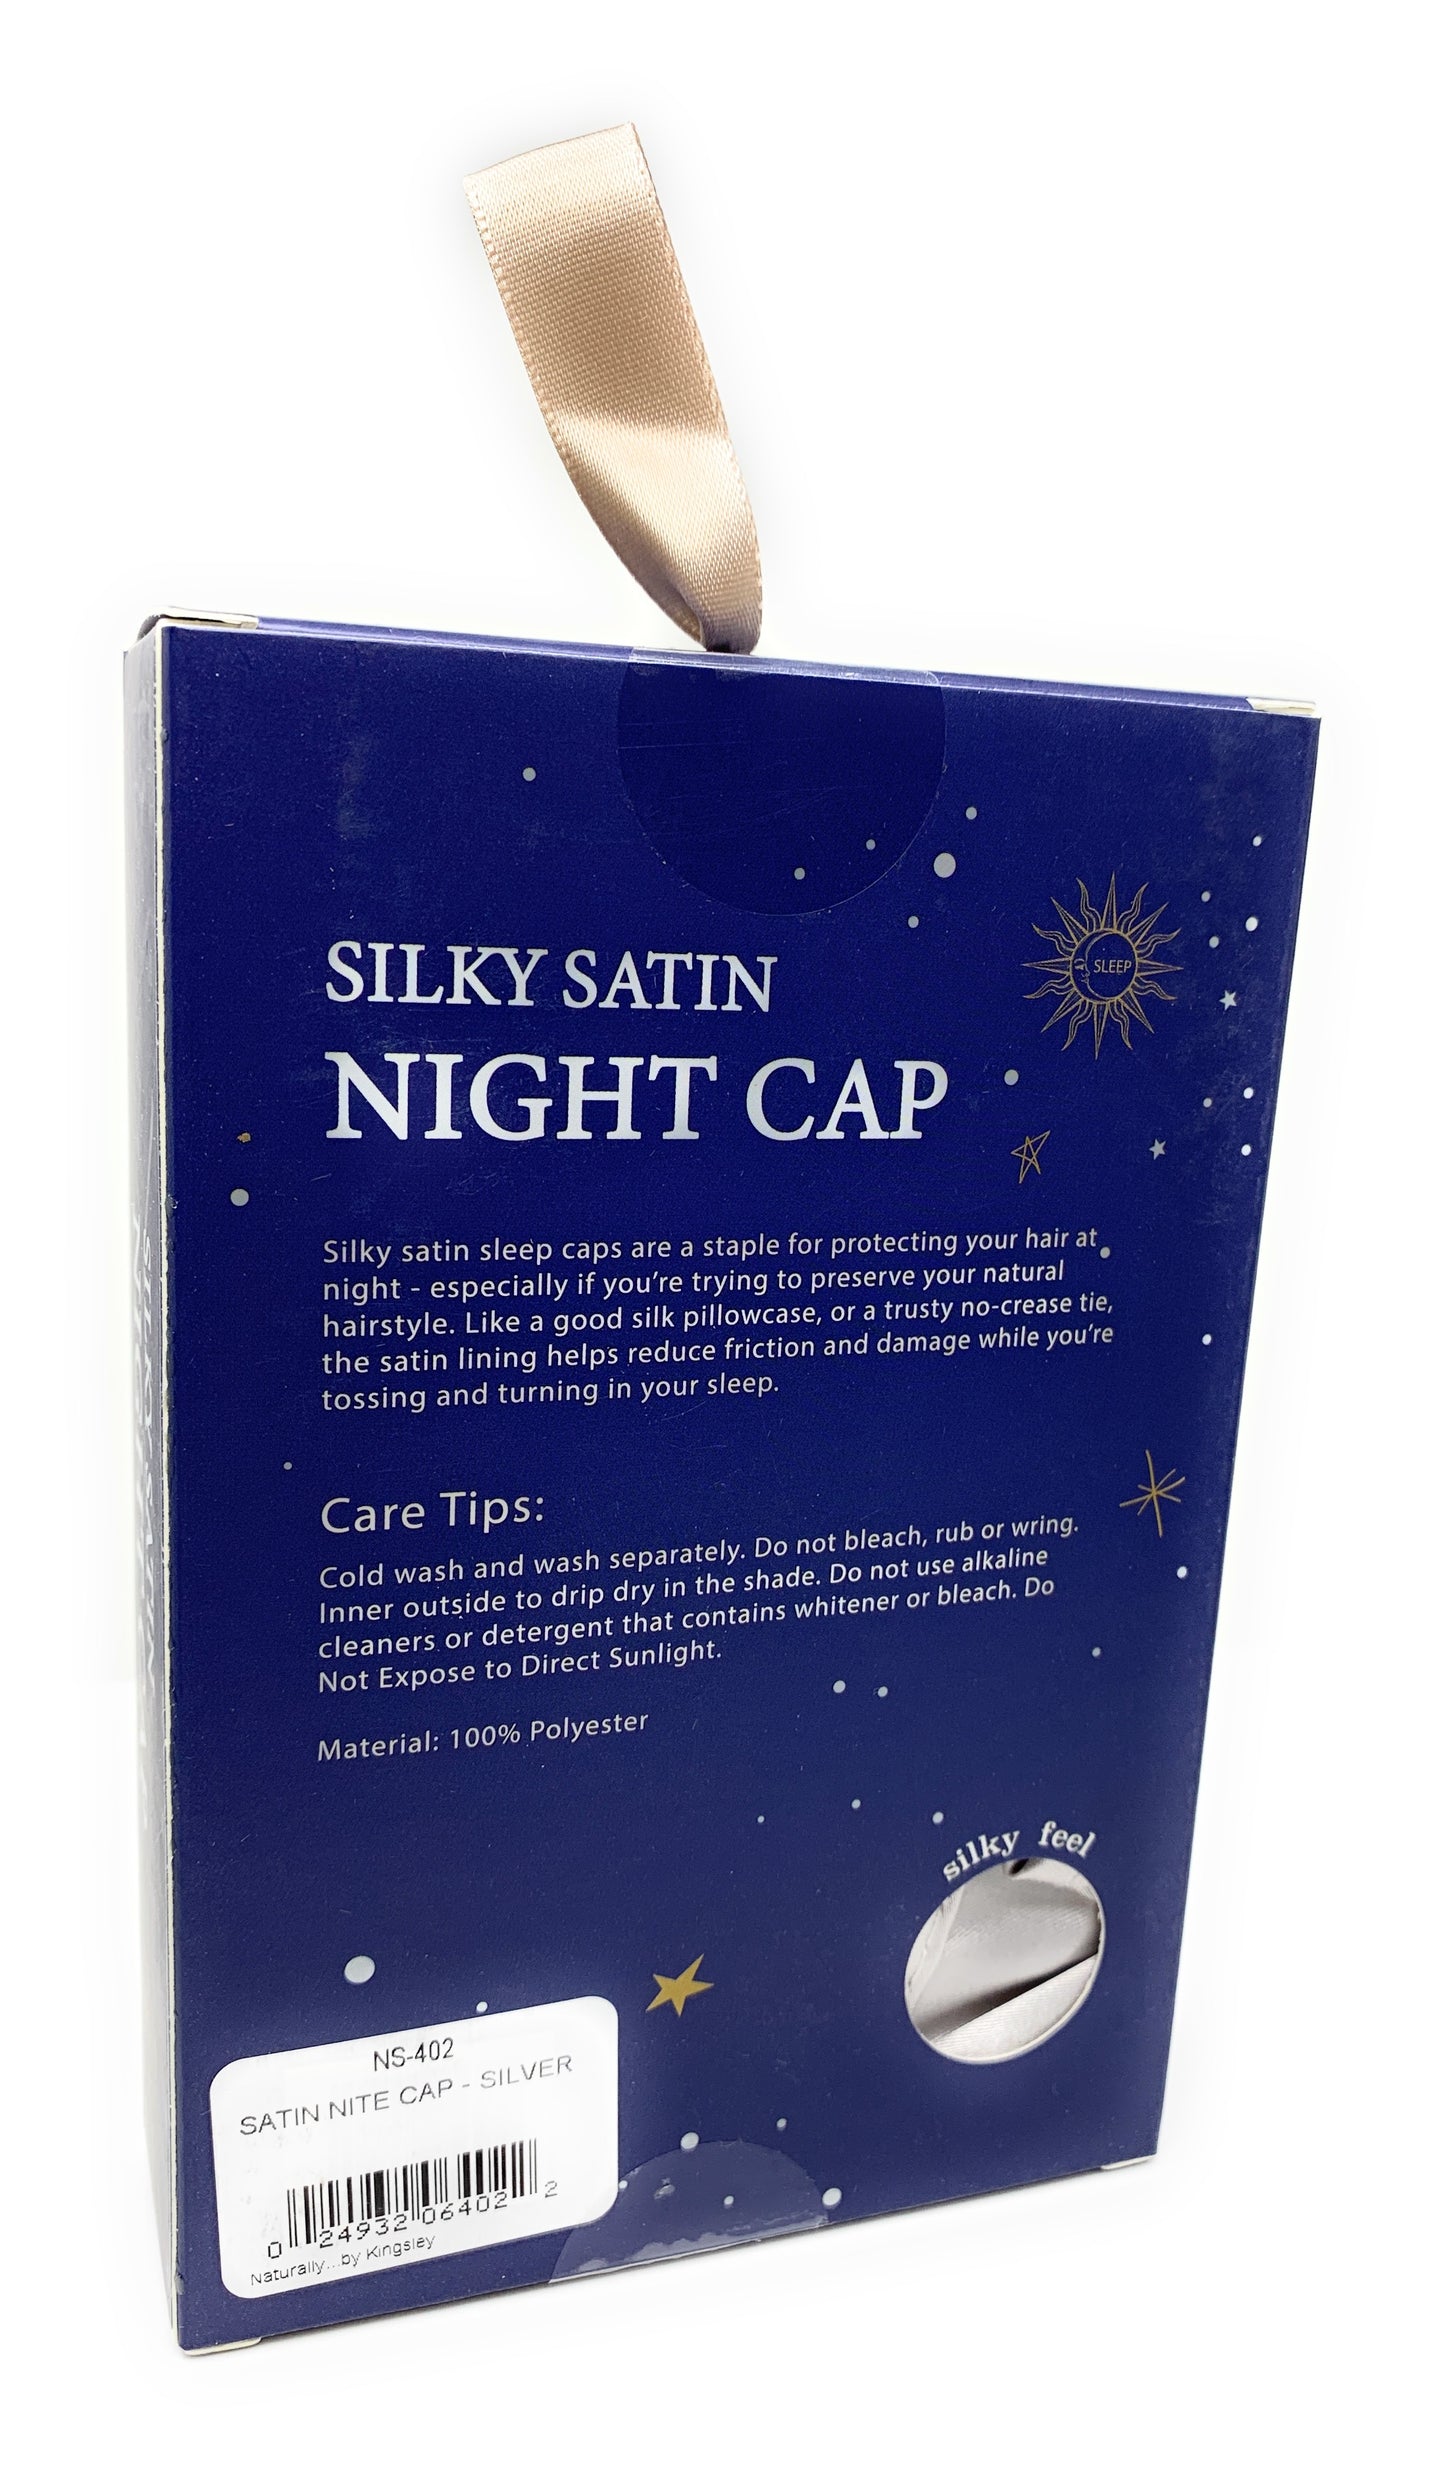 Kingsley Silky Satin Night Cap Sleeping Hats Sleep Bonnets Silver